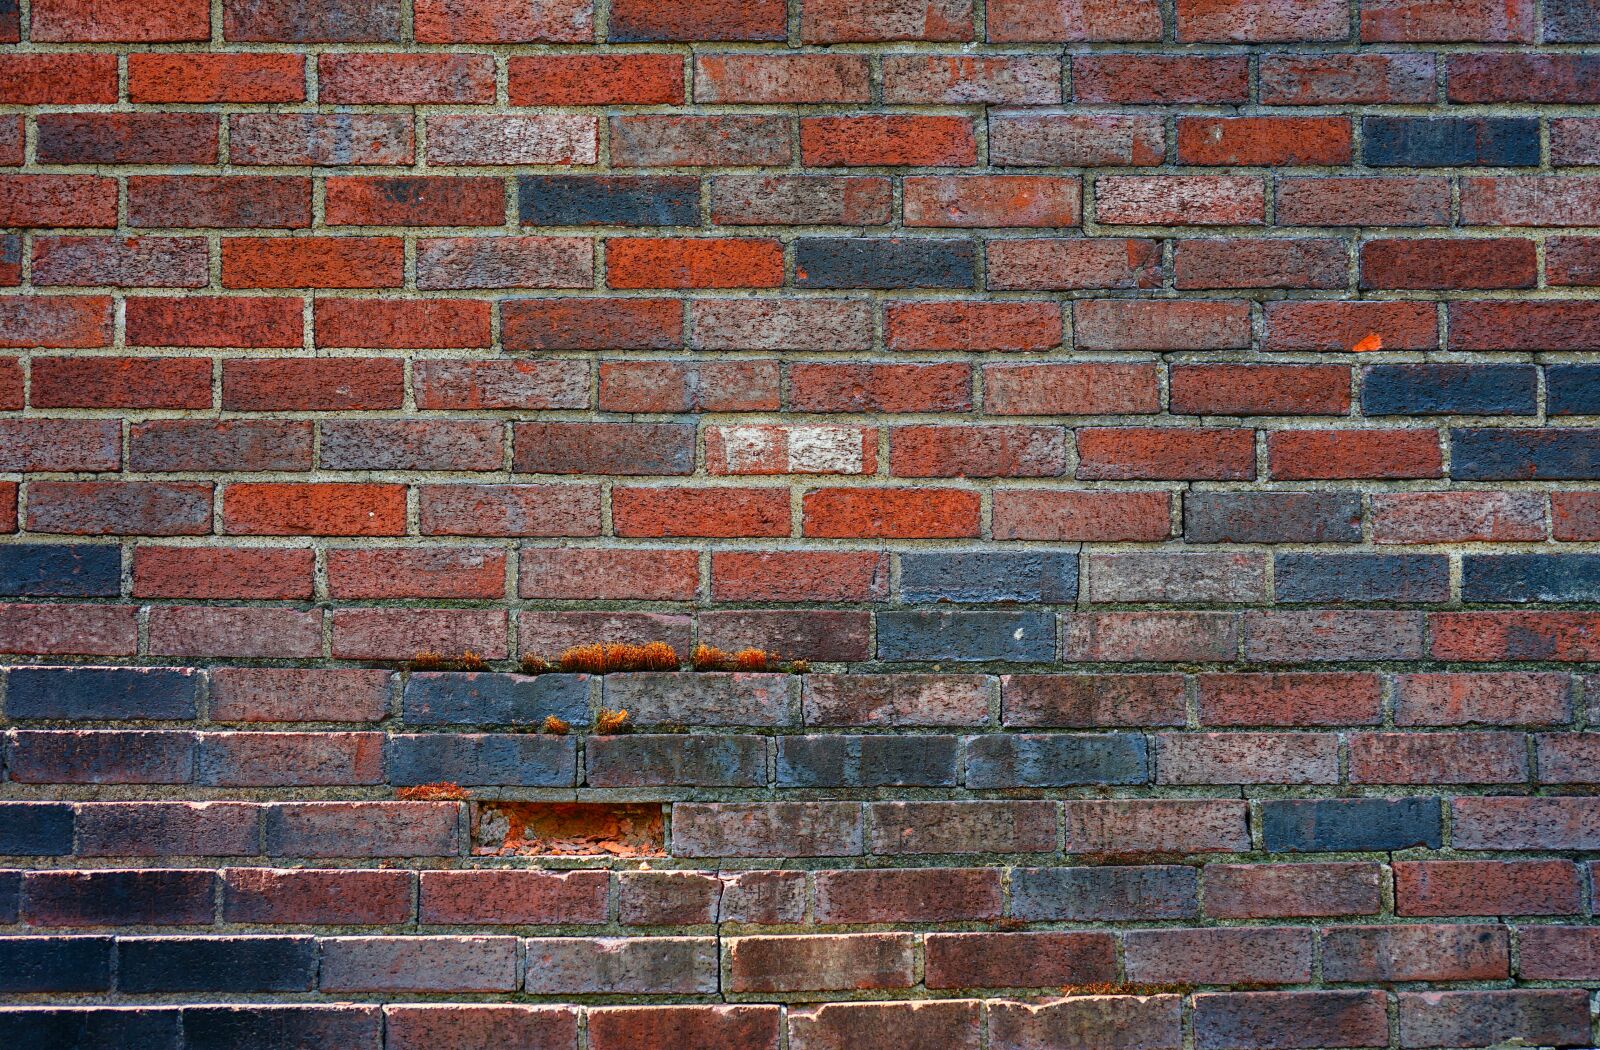 Sony FE 50mm F2.8 Macro sample photo. Wall, bricks, texture photography